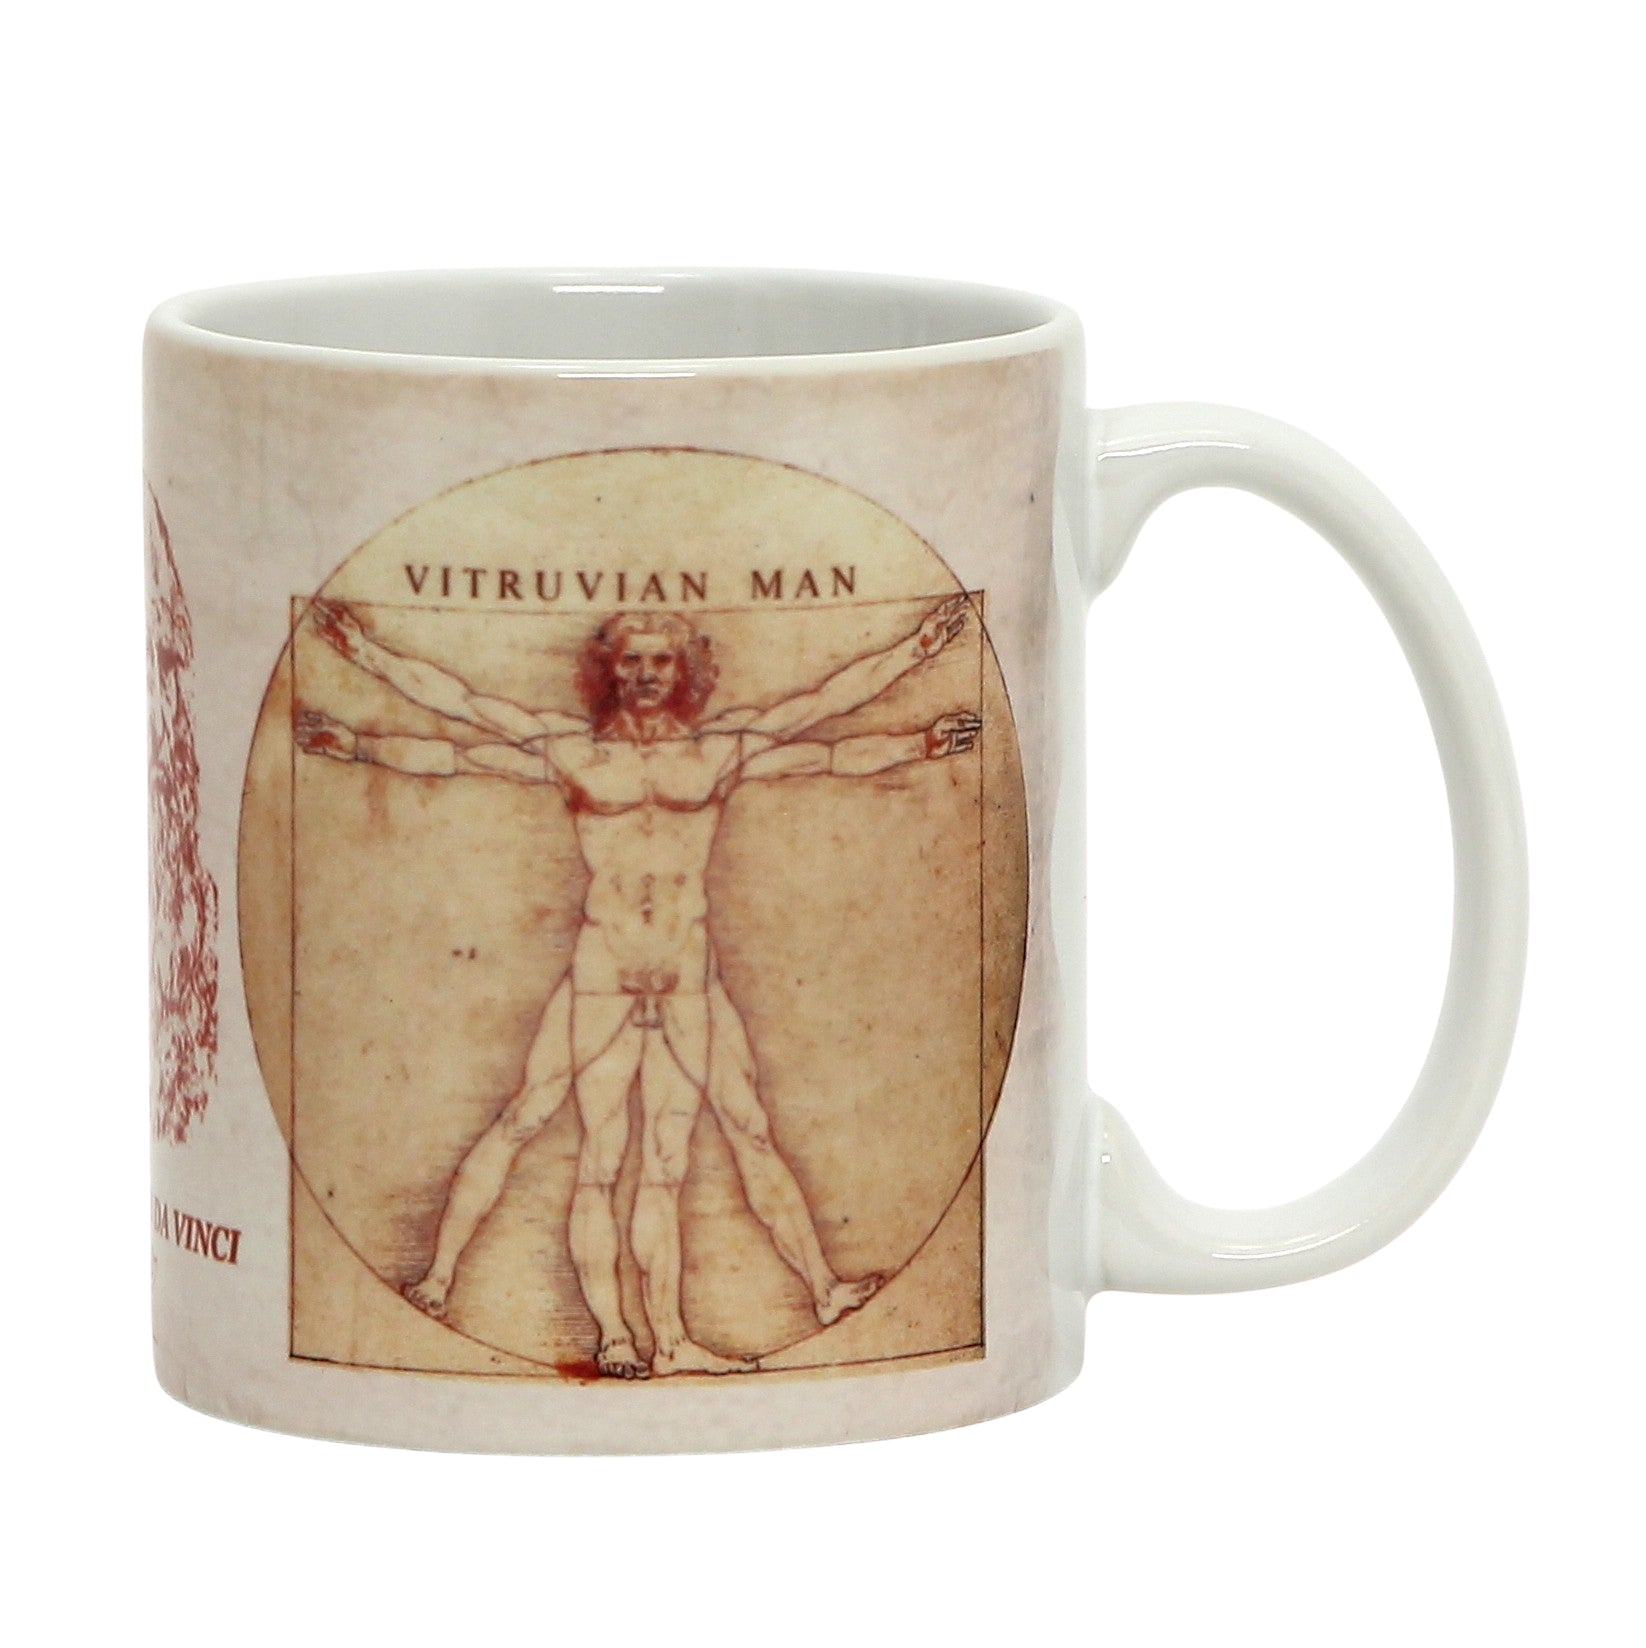 SUBLIMART: Affresco Mug - Vitruvian Man + Vitruvian Woman - Artistica.com